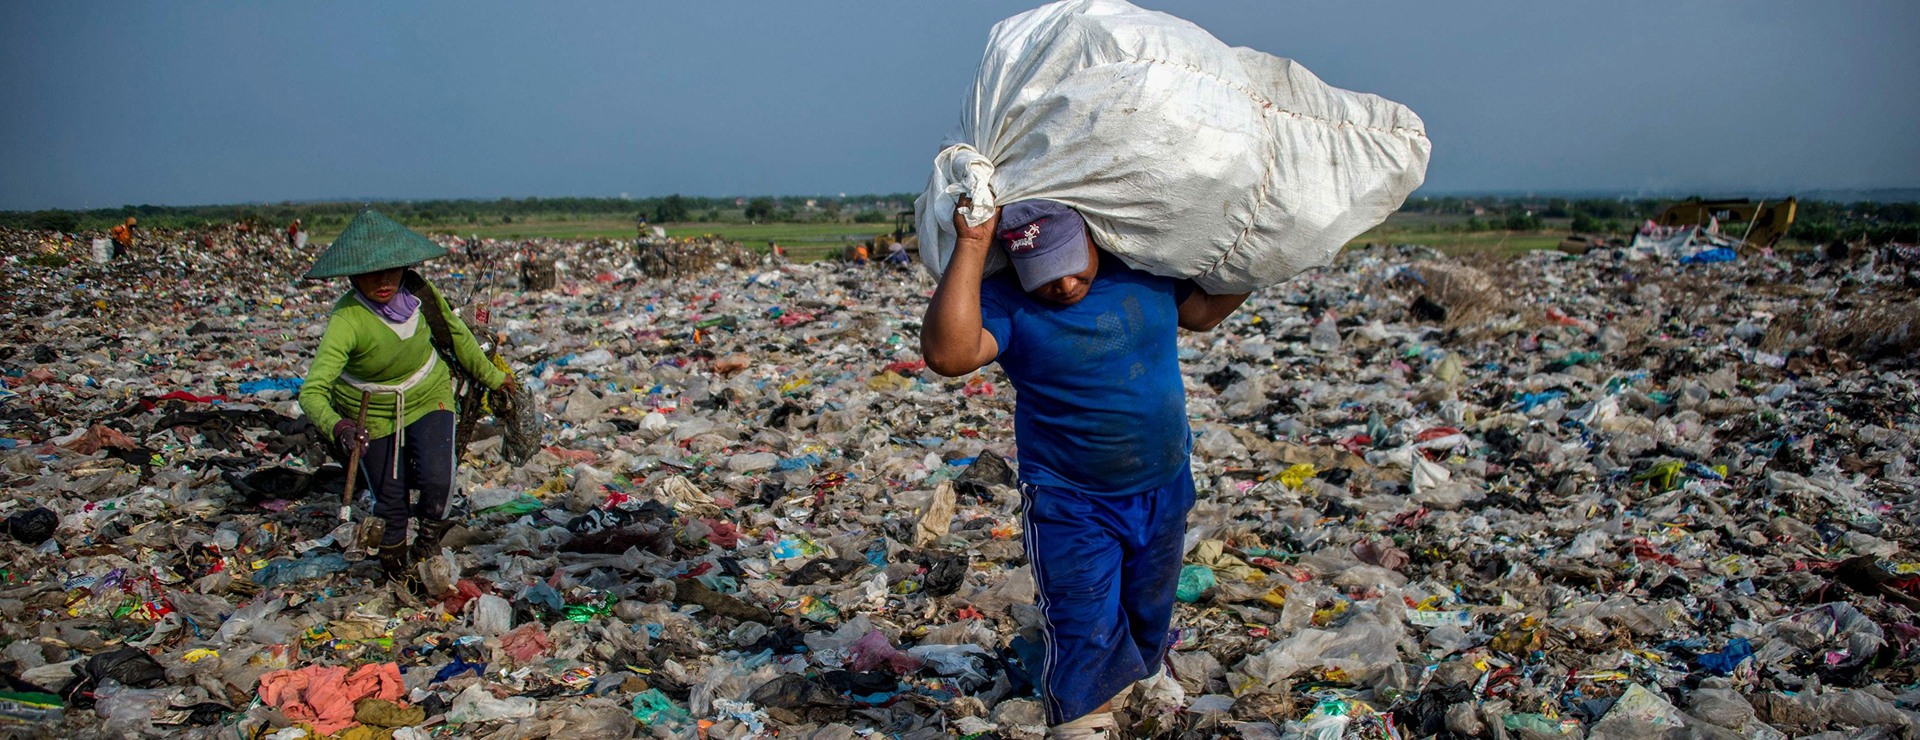 ماحول دوست پیکیجنگ: پلاسٹک کی تبدیلی کے لیے ایک وسیع جگہ ہے، گودا مولڈنگ پر توجہ دیں!